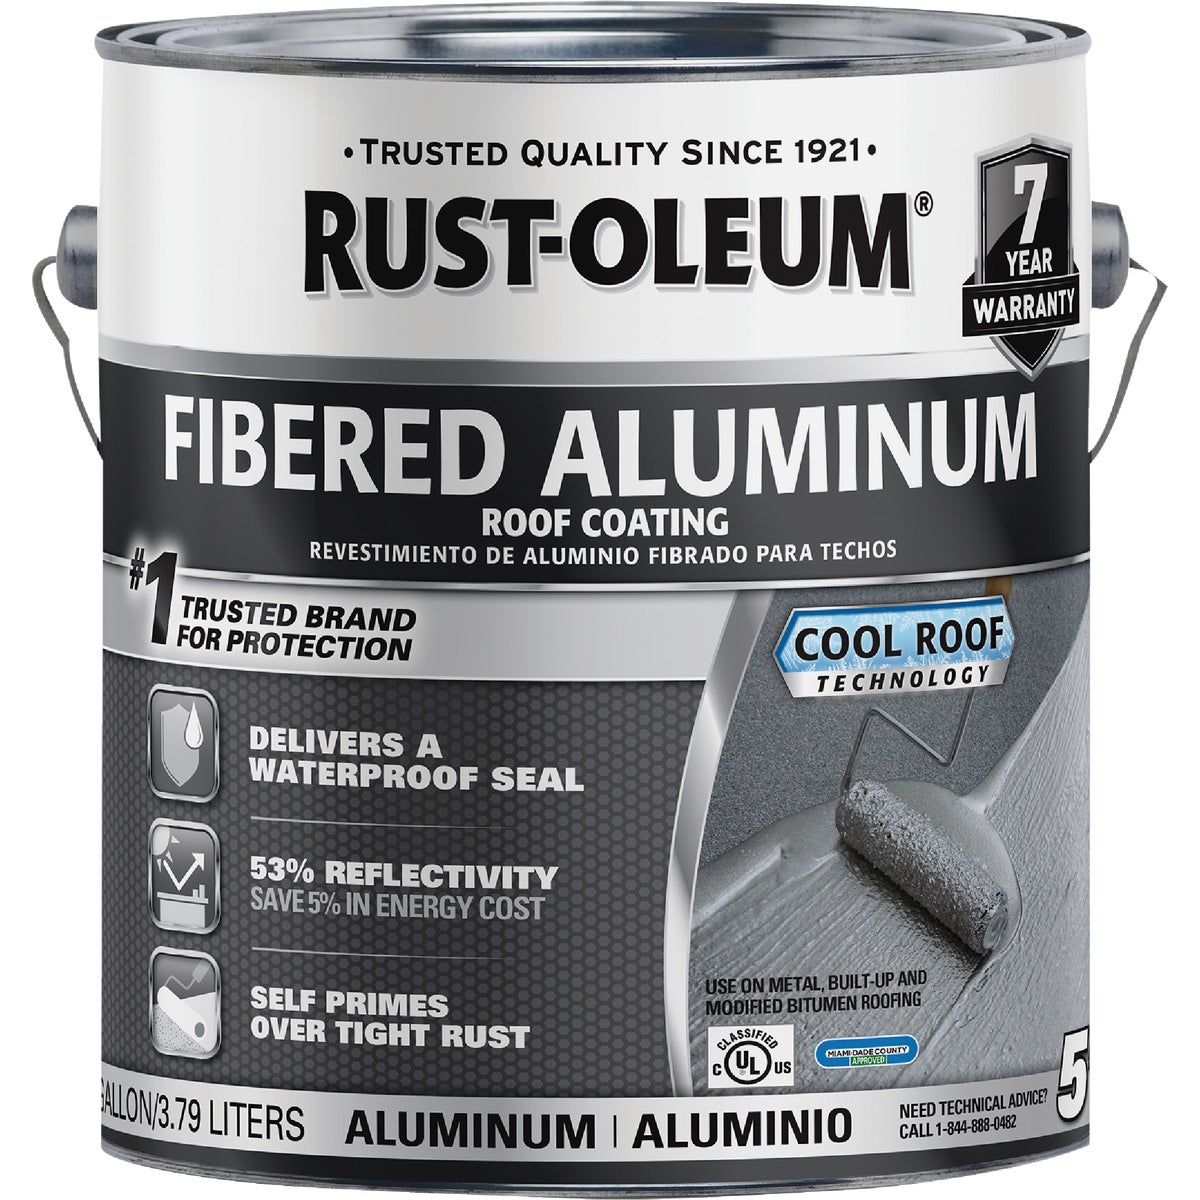 Rust-Oleum 510 1 Gal. 7-Year Fibered Aluminum Roof Coating